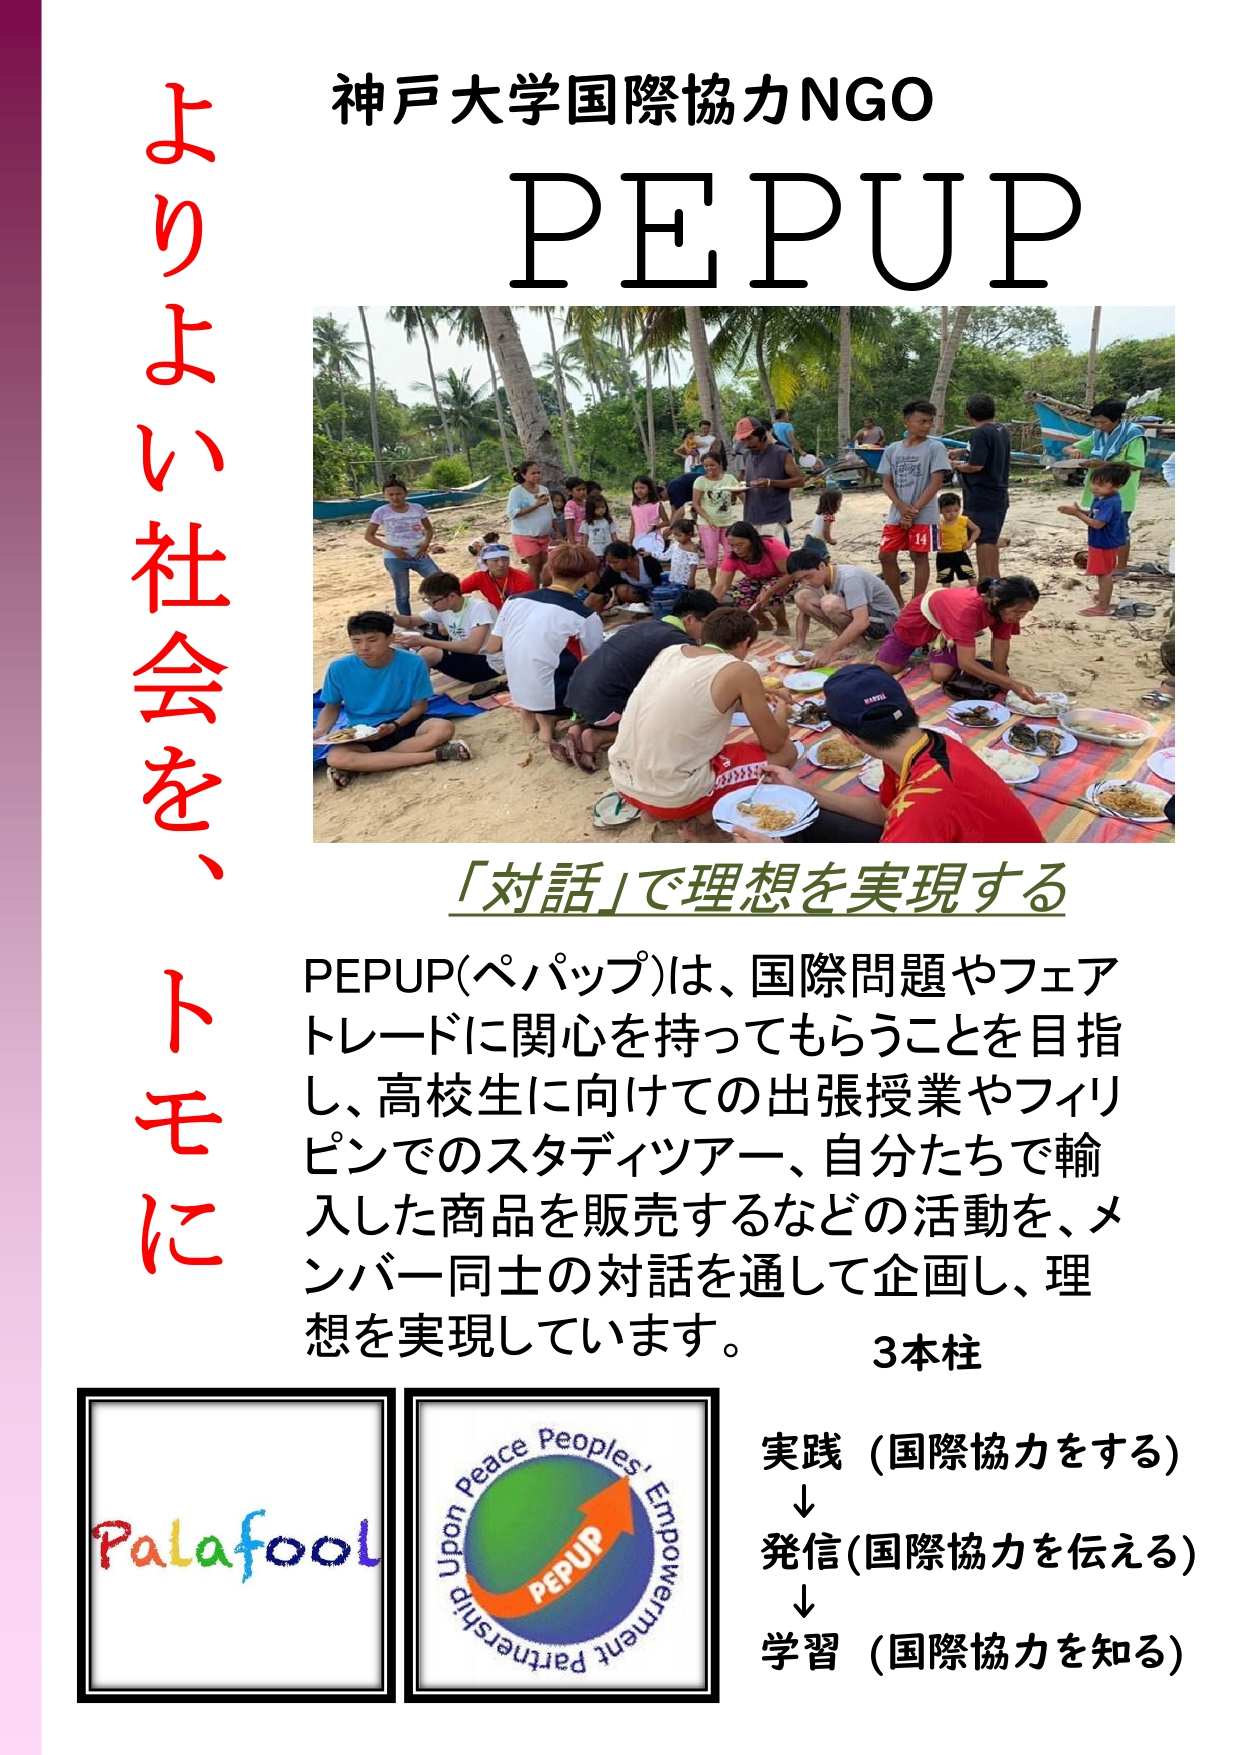 よりよい社会を、トモに 〜神戸大学国際NGO PEPUP〜